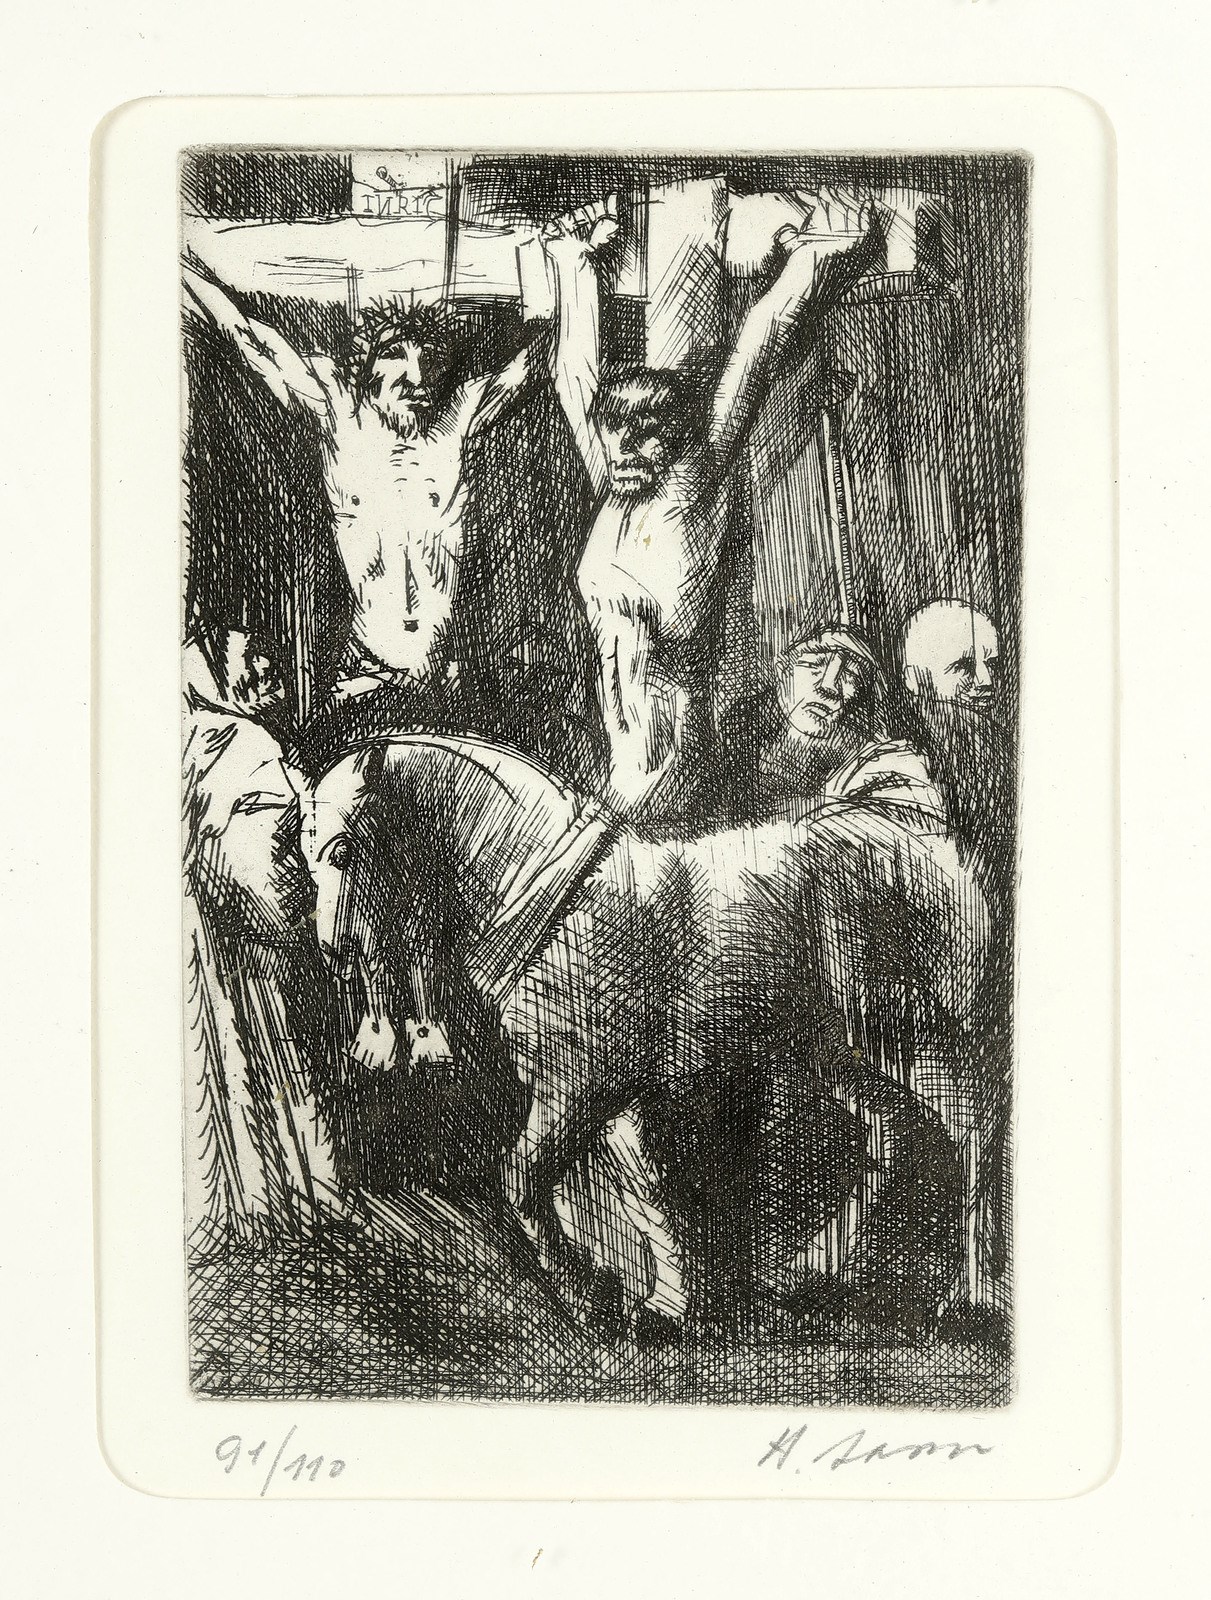 Crucifixion. (Aligi Sassu)